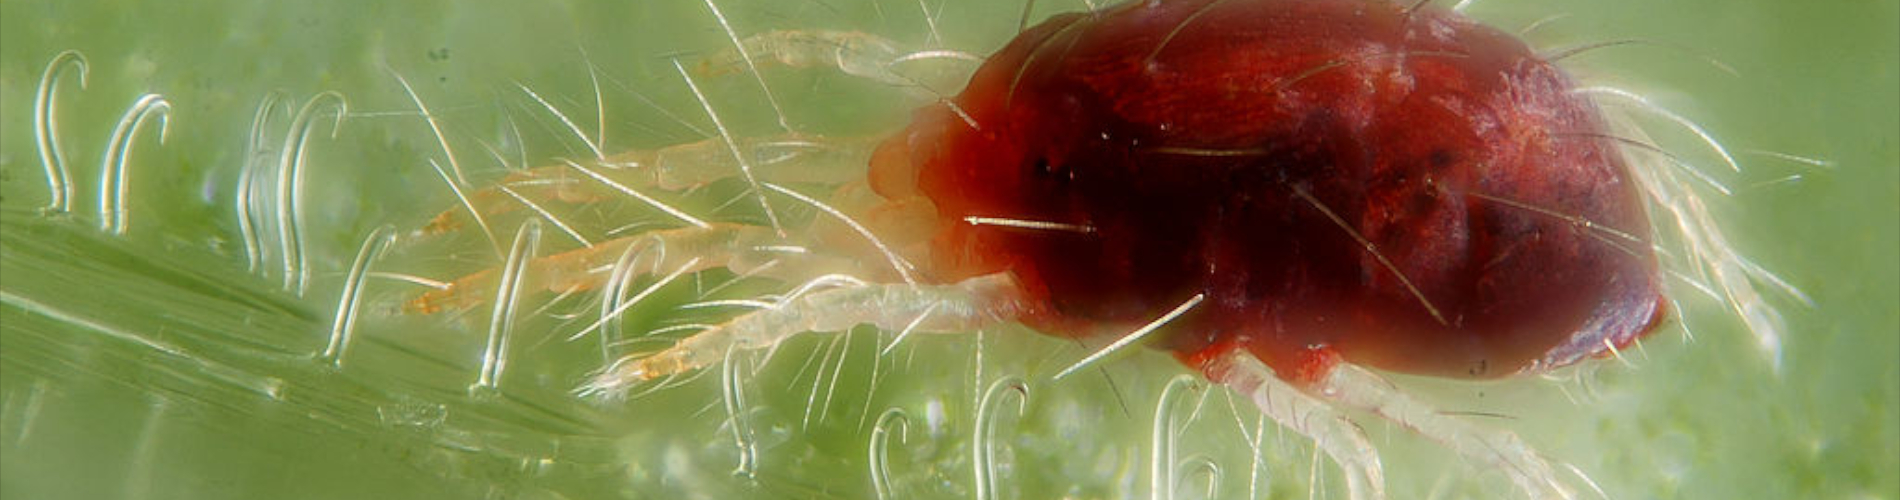 Plaga czerwonych mikro pajączków